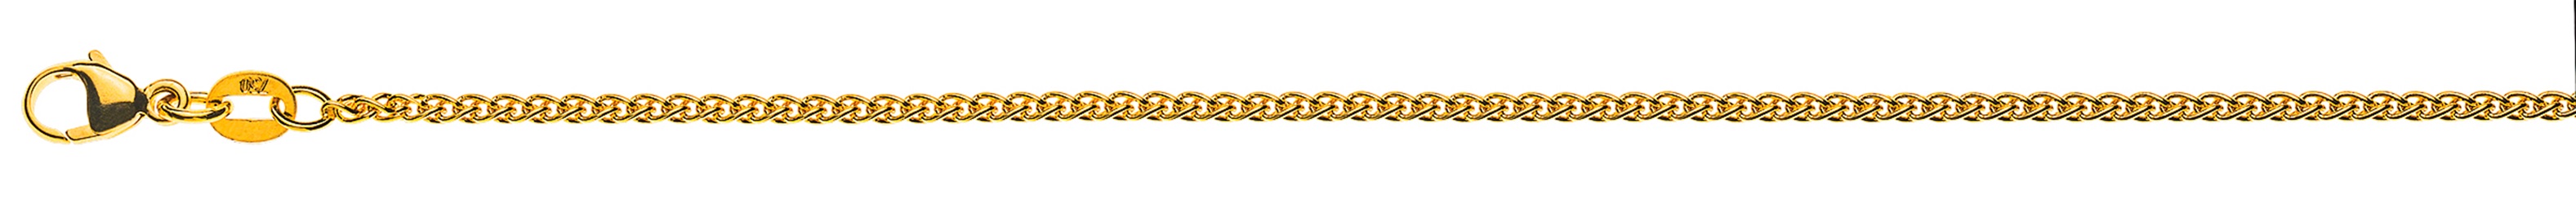 AURONOS Élégance Halskette Gelbgold 14K Zopfkette 45cm 1.6mm